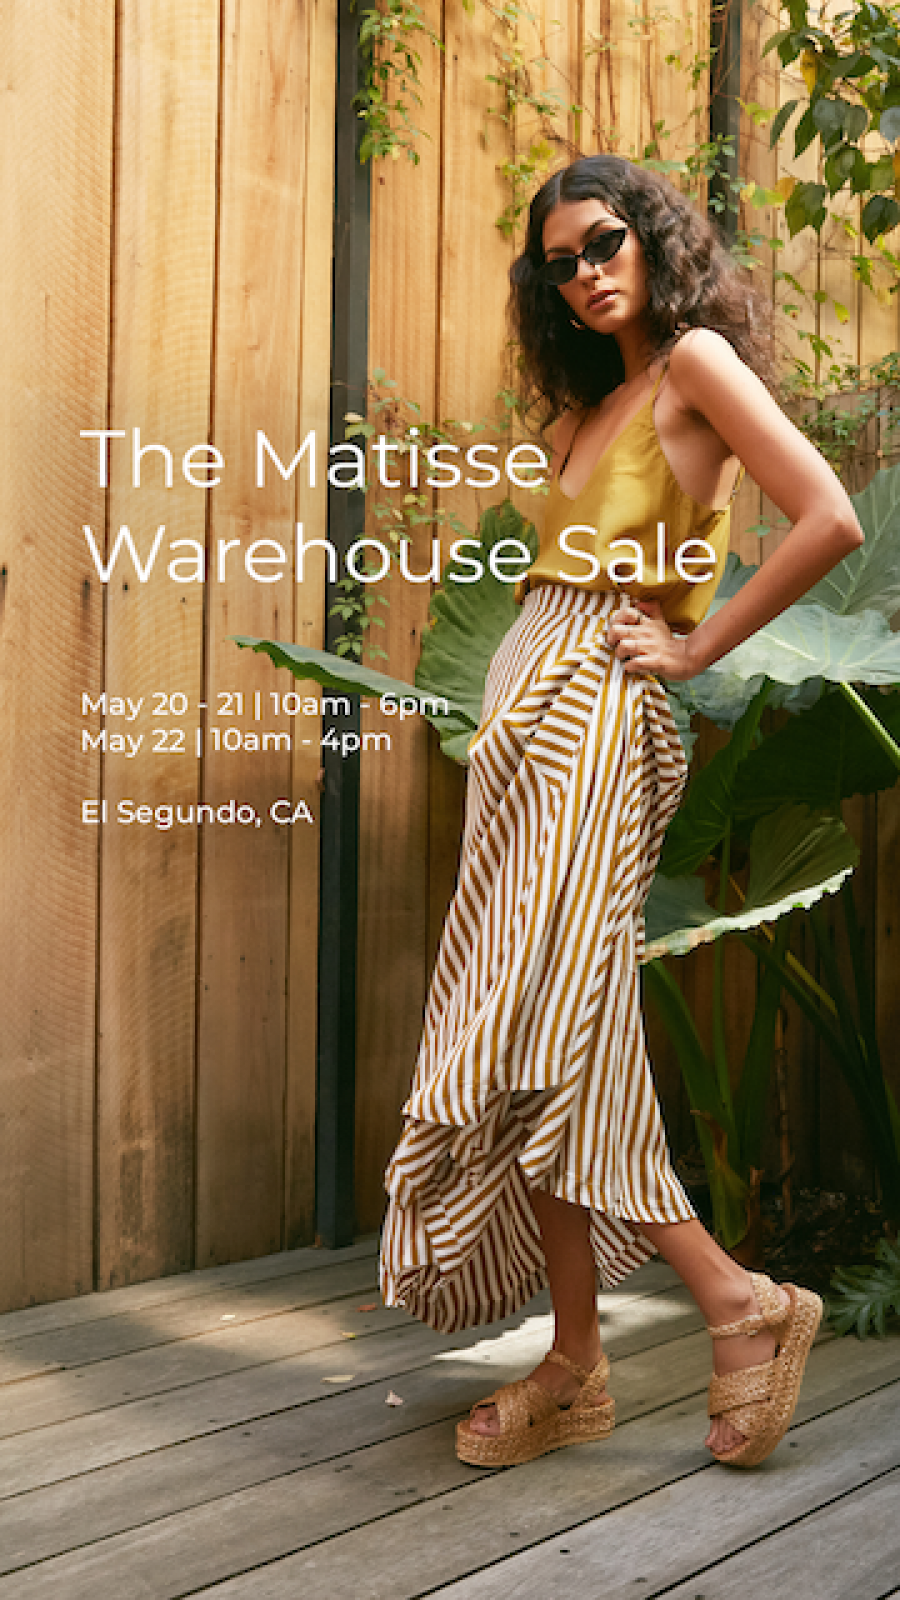 The Matisse Footwear Warehouse Sale